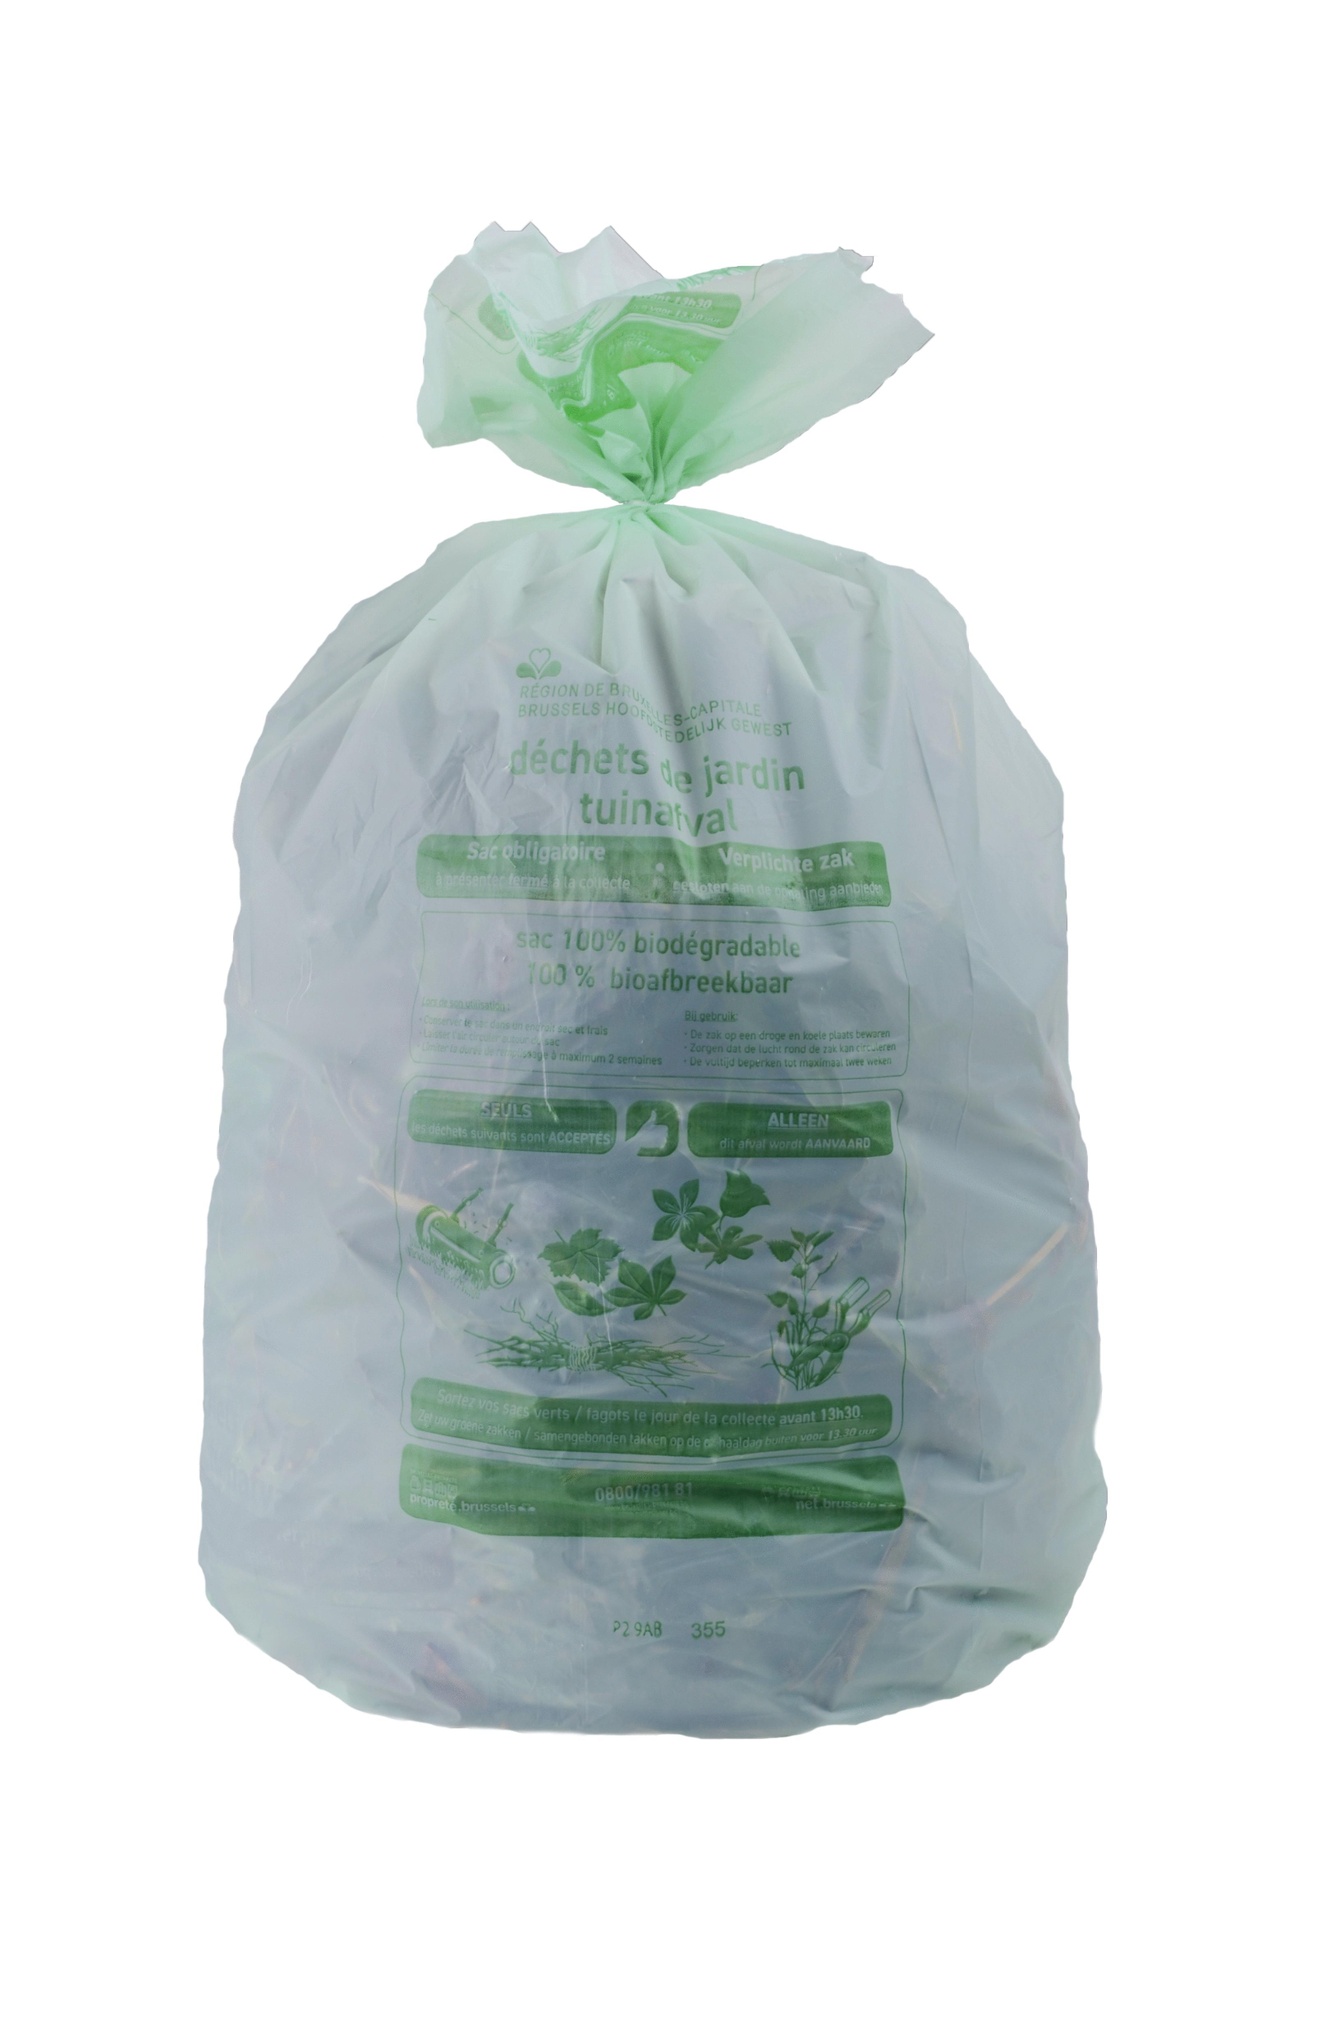 Passief Rijk Vet Net Brussel verplicht gebruik van biologisch afbreekbare zakken voor  tuinafval | BRUZZ